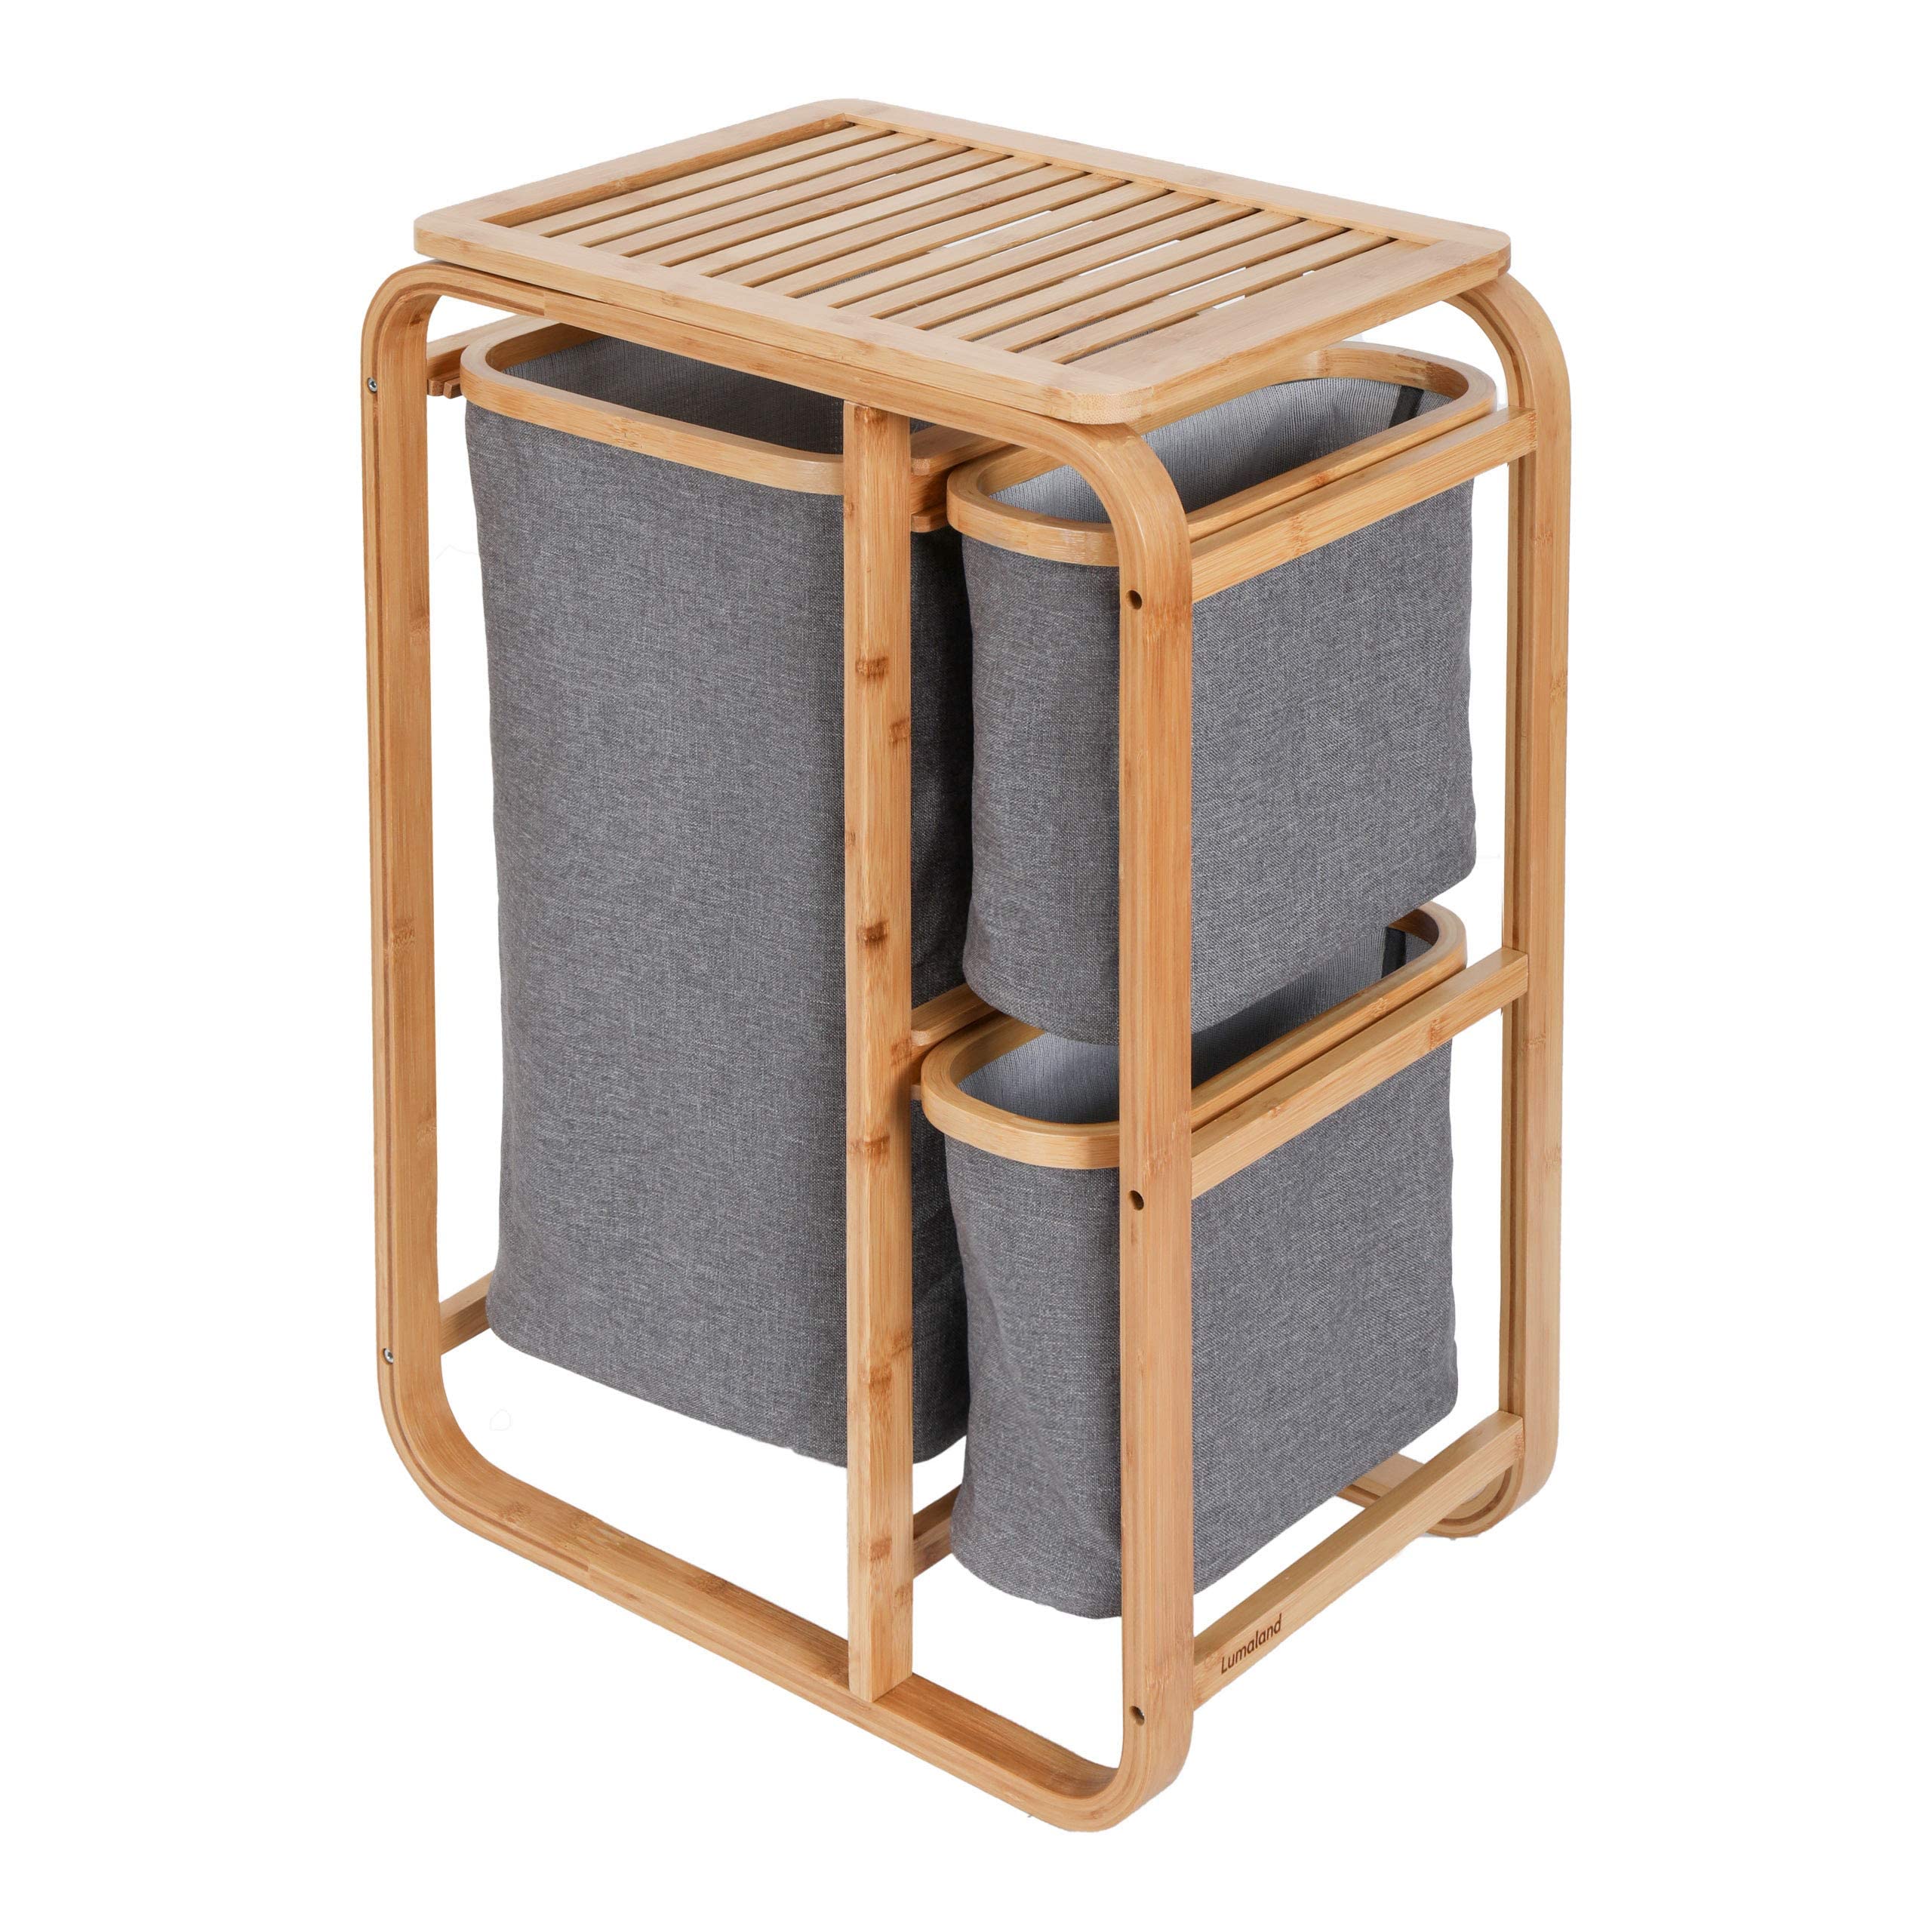 Lumaland Wäschekorb aus Bambus mit 3 ausziehbaren Wäschesäcken | Größe ca. 71 cm Höhe x 50 cm Breite x 33 cm Tiefe, Farbe: Grau